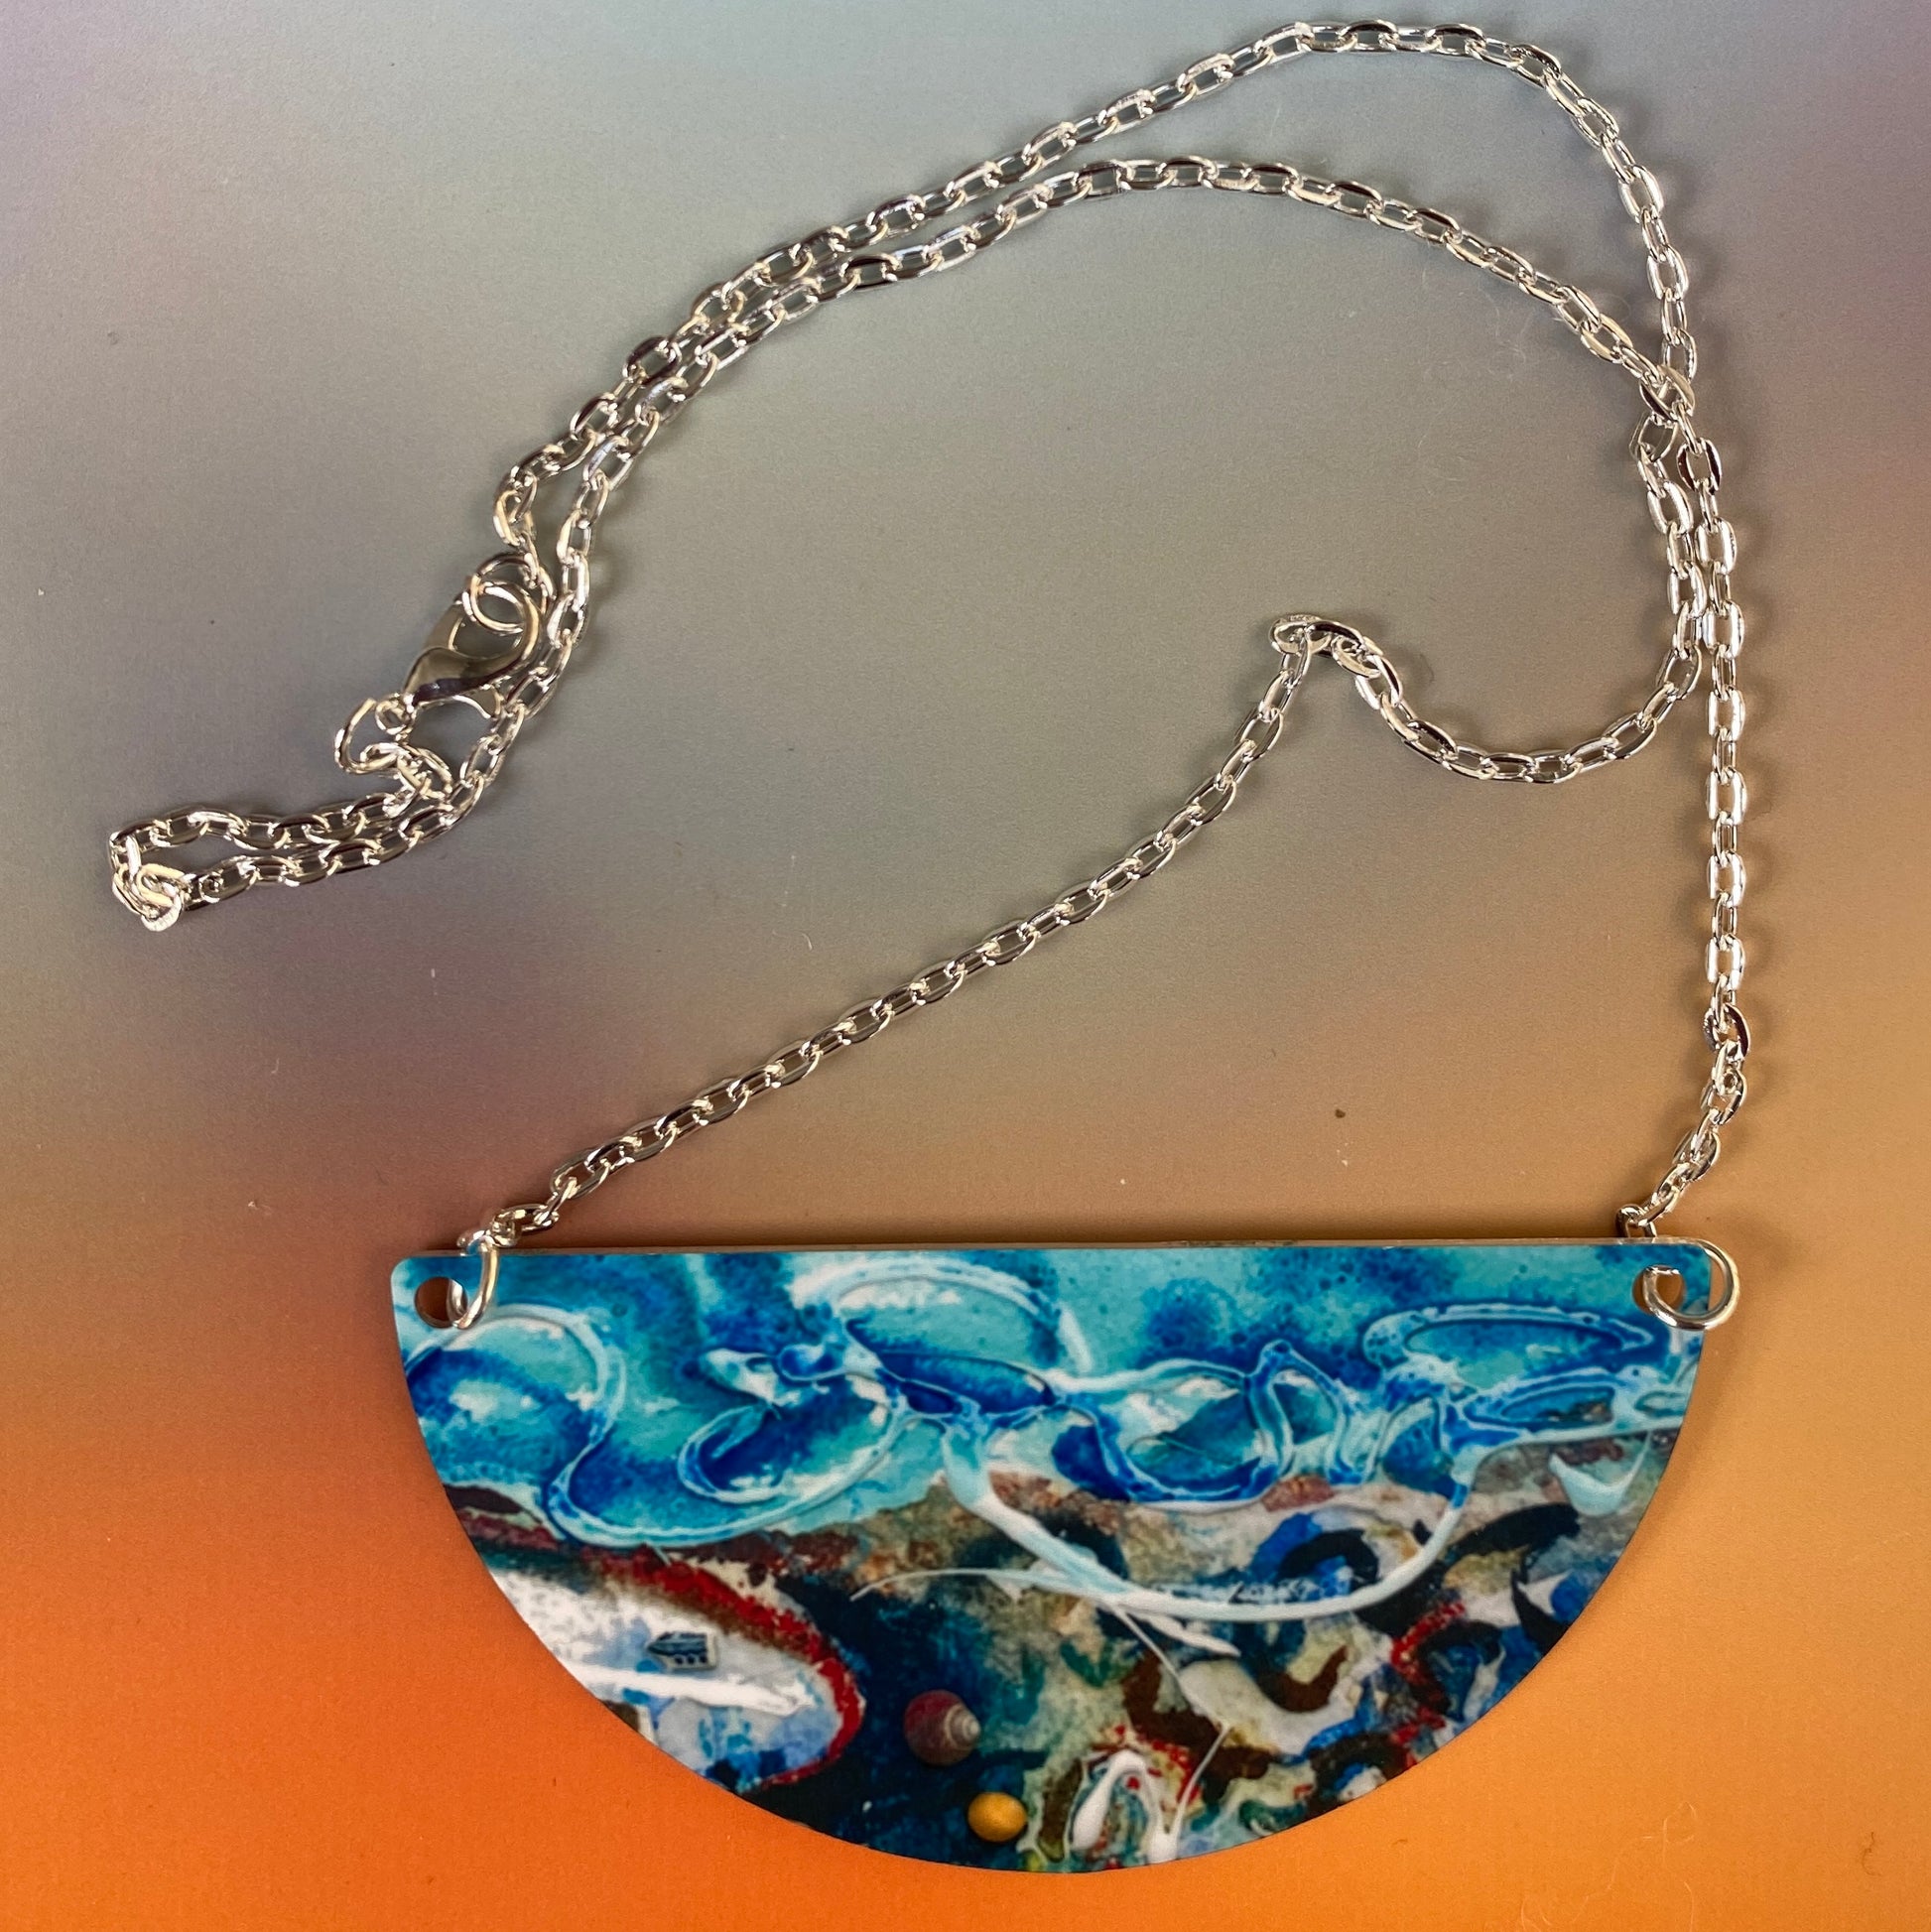 Shorelines design of necklace designed by Orkney artist Jane Glue Scotland